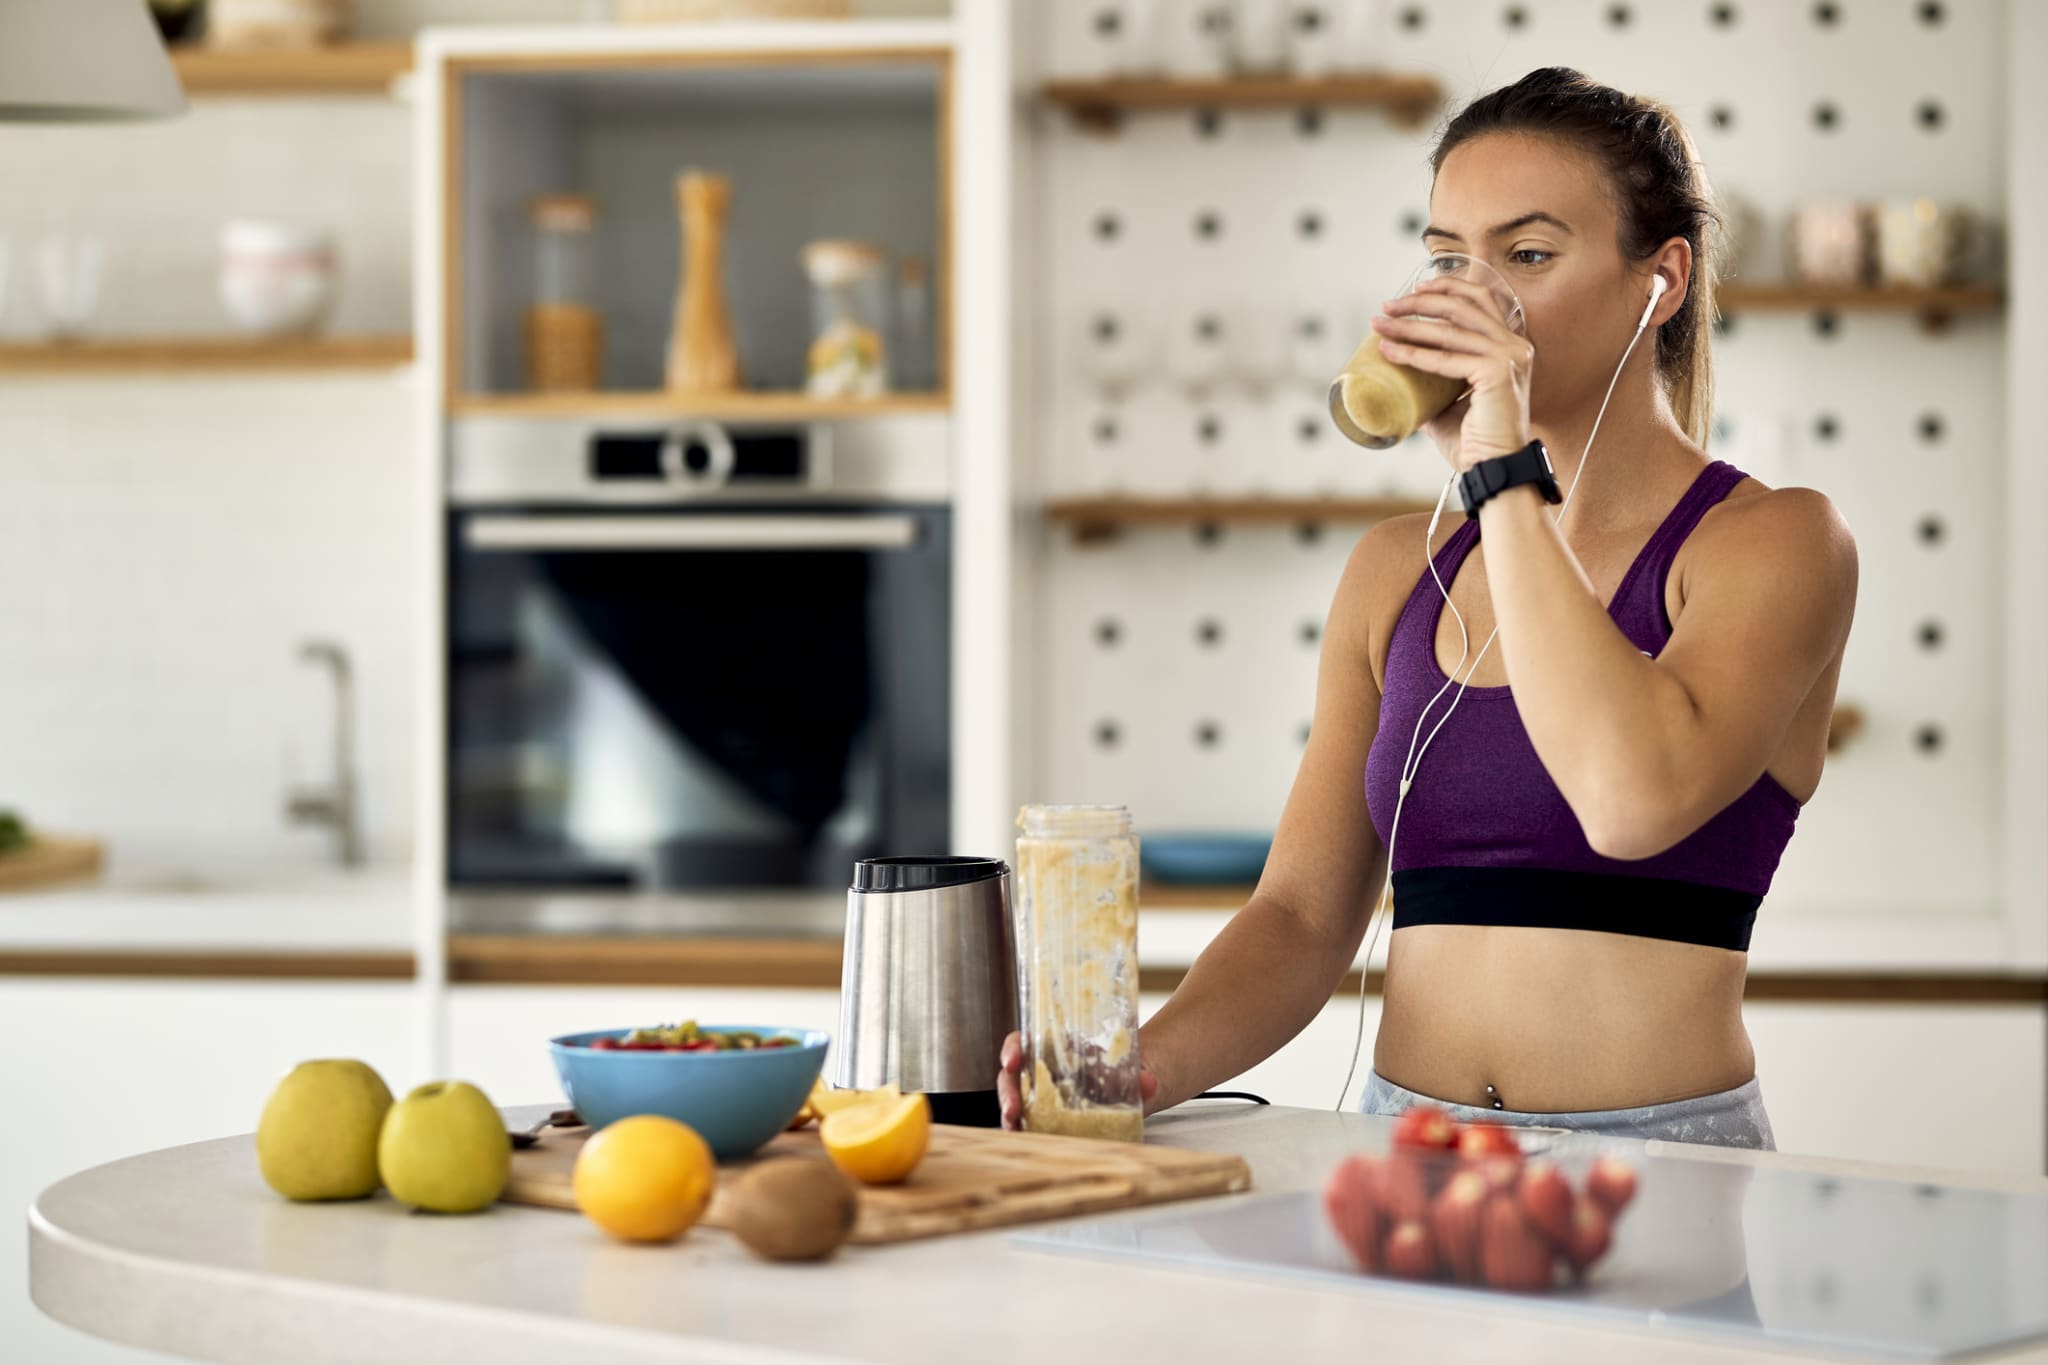 Принимать таблетки на голодный желудок. Заниматься спортом после еды. Фитнес утро картинки. Заниматься спортом до еды или после. Заниматься спортом перед едой или после.